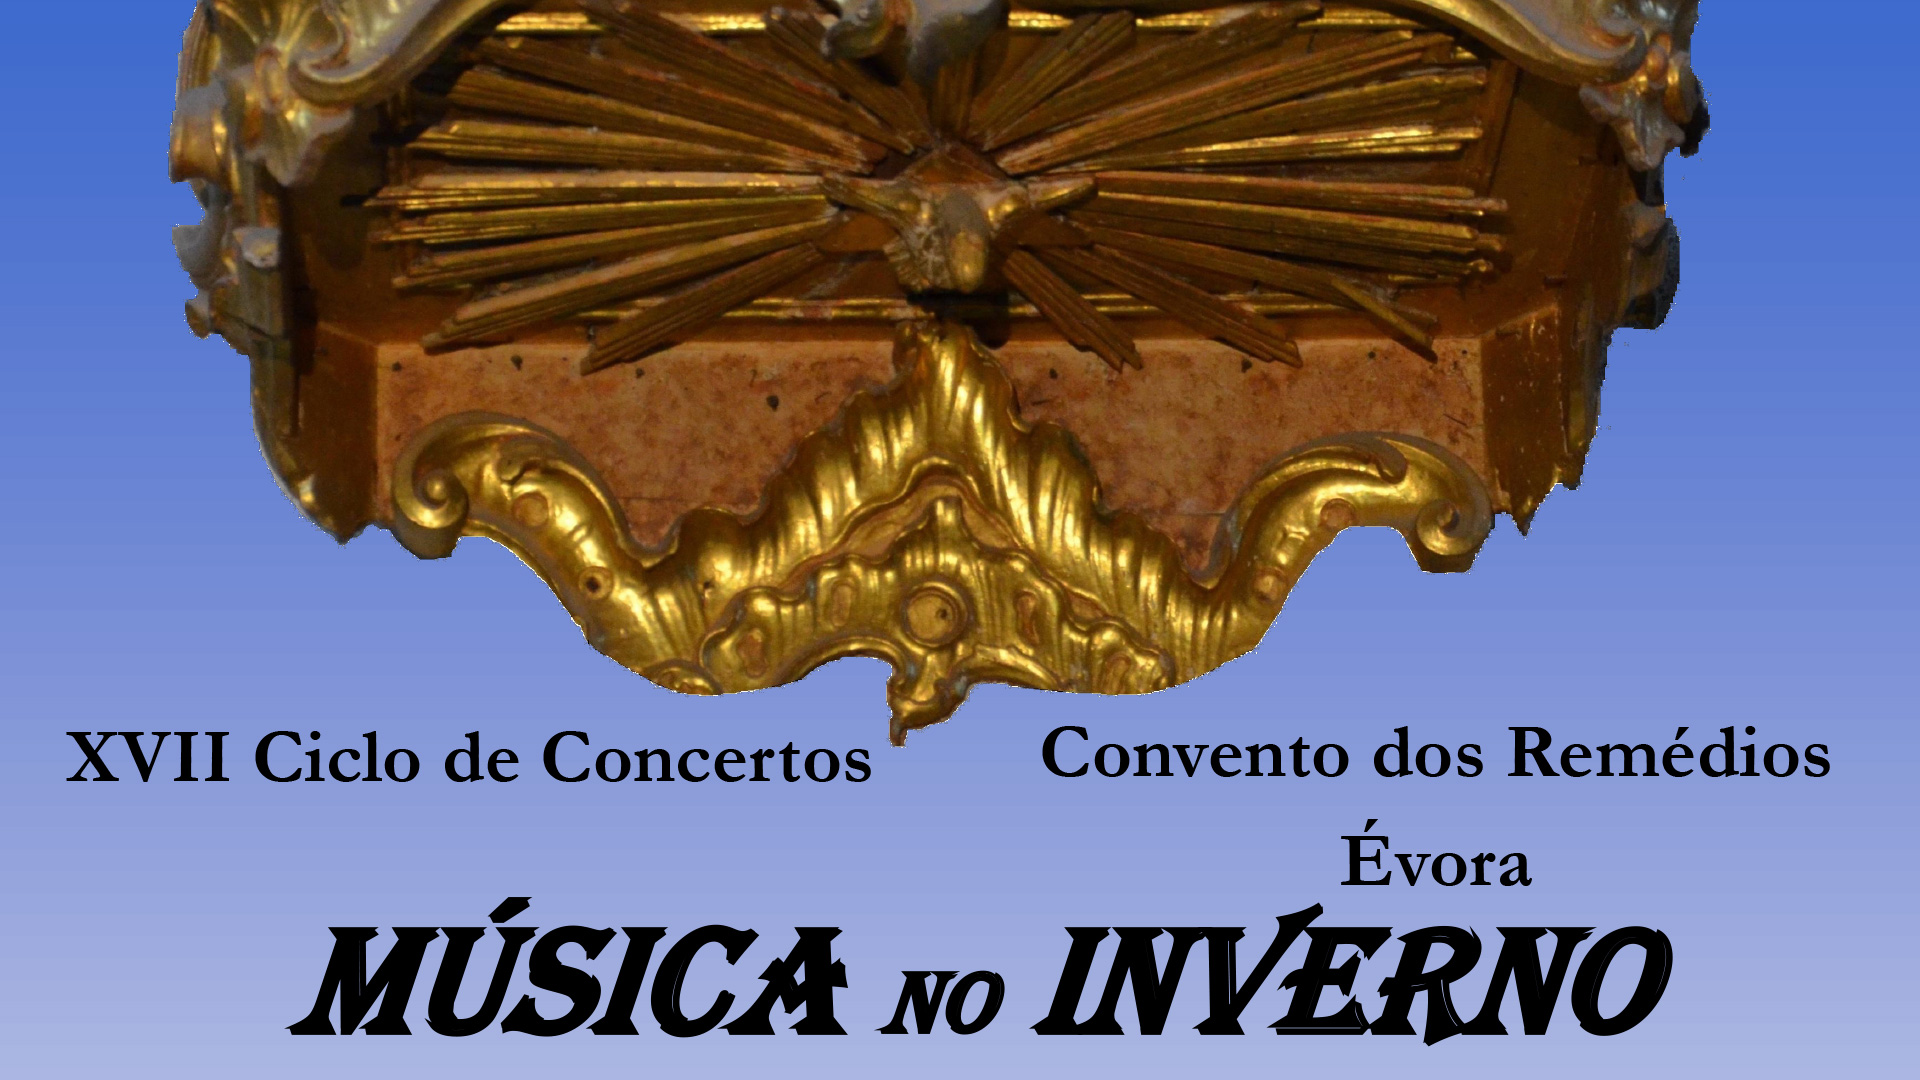 XVII Ciclo de Concertos "Música no Inverno"